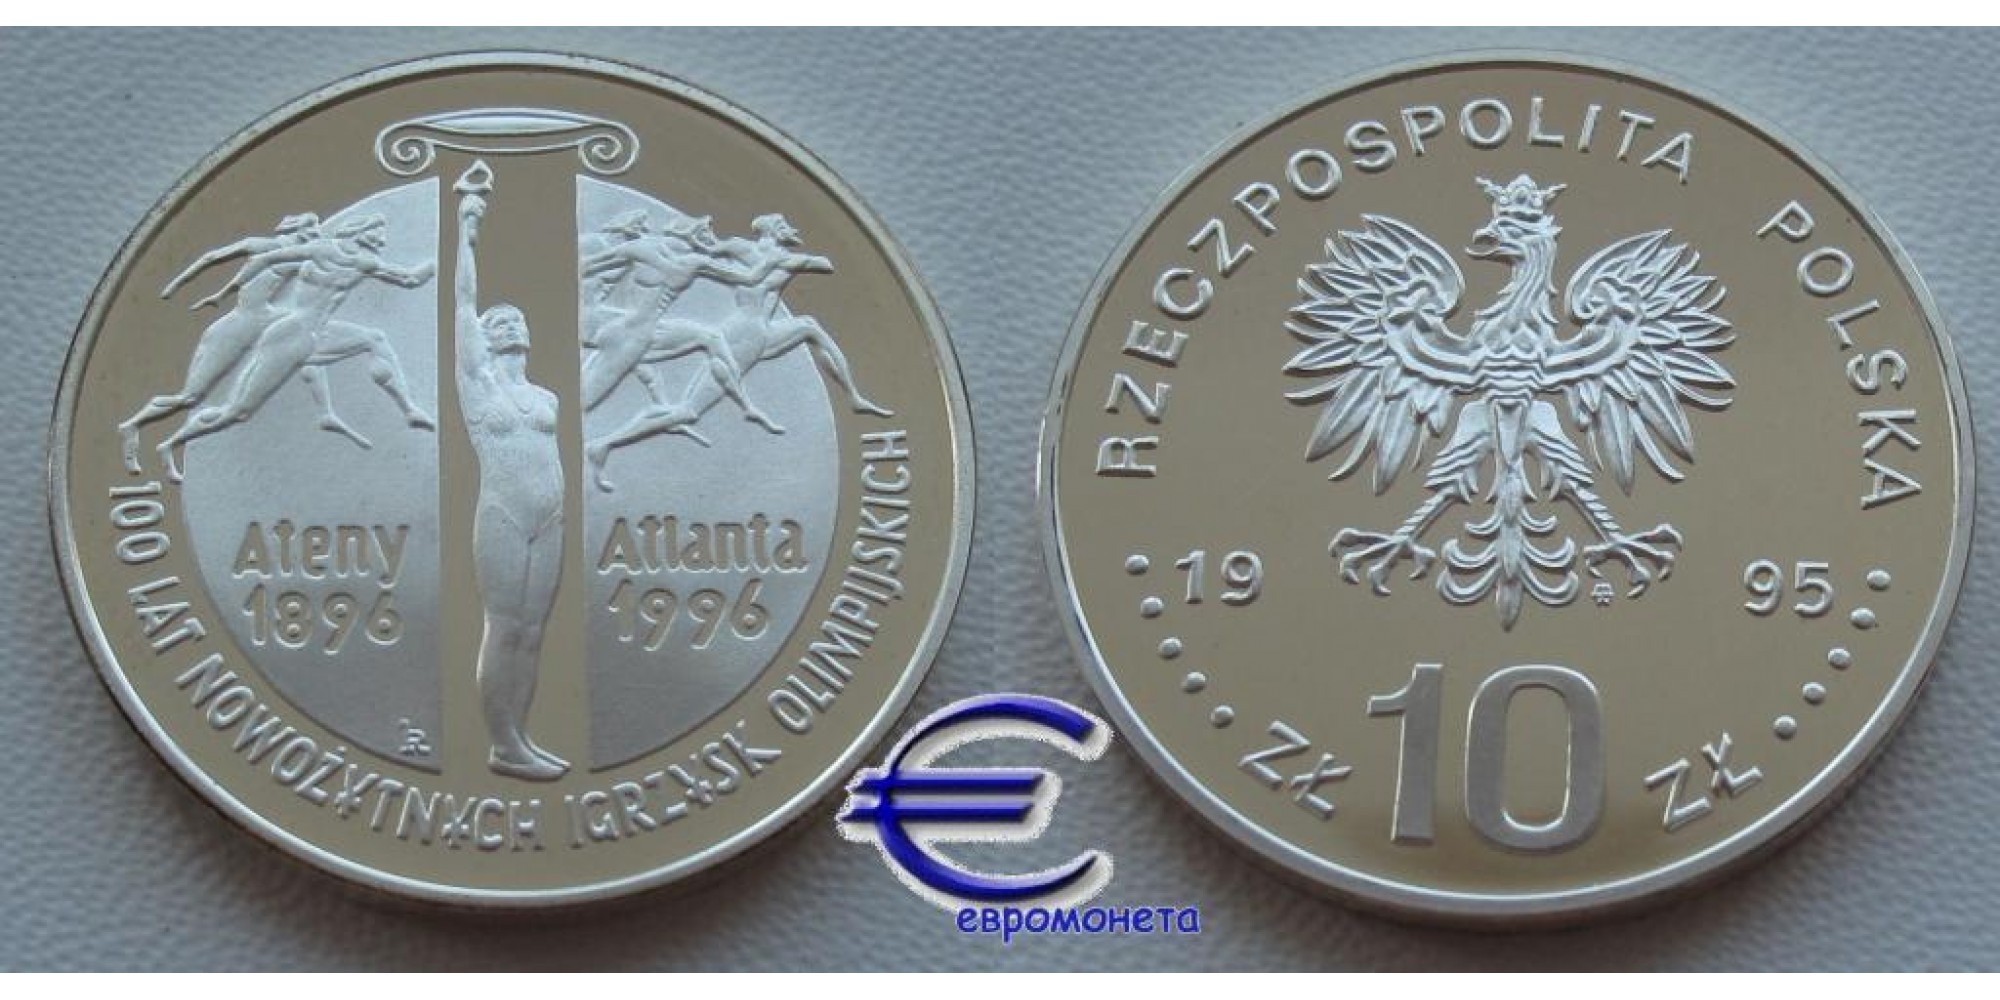 Польша 10 злотых 1995 Атланта 1996 ПРУФ proof серебро